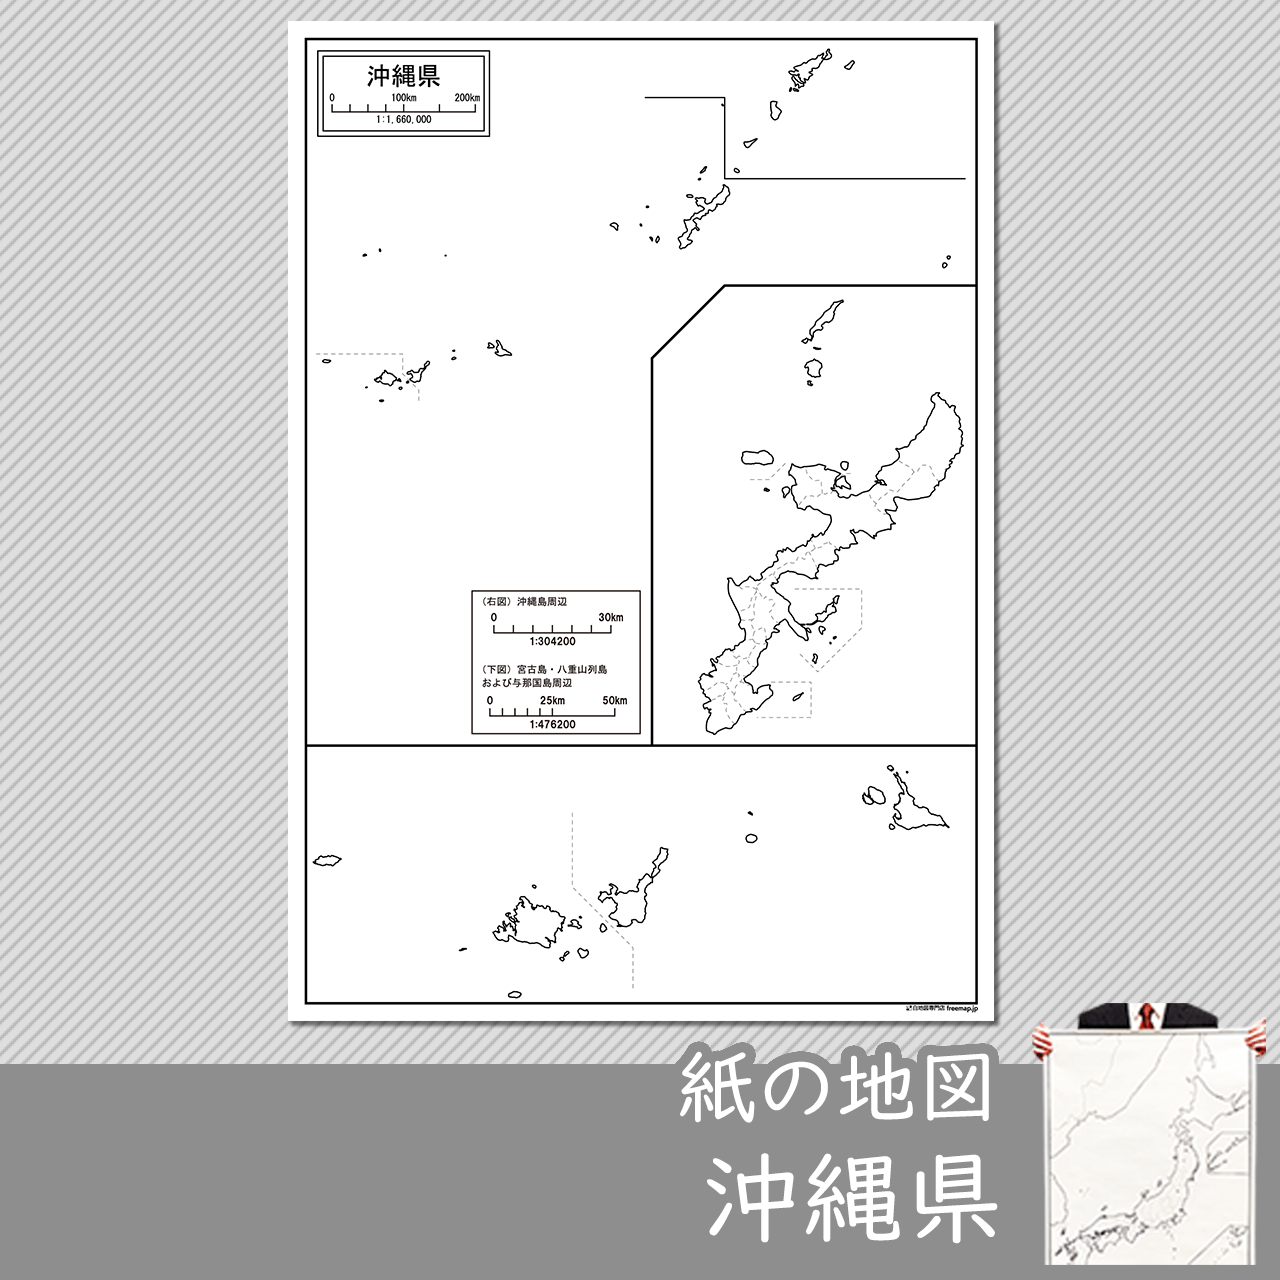 沖縄地方の紙の白地図のサムネイル